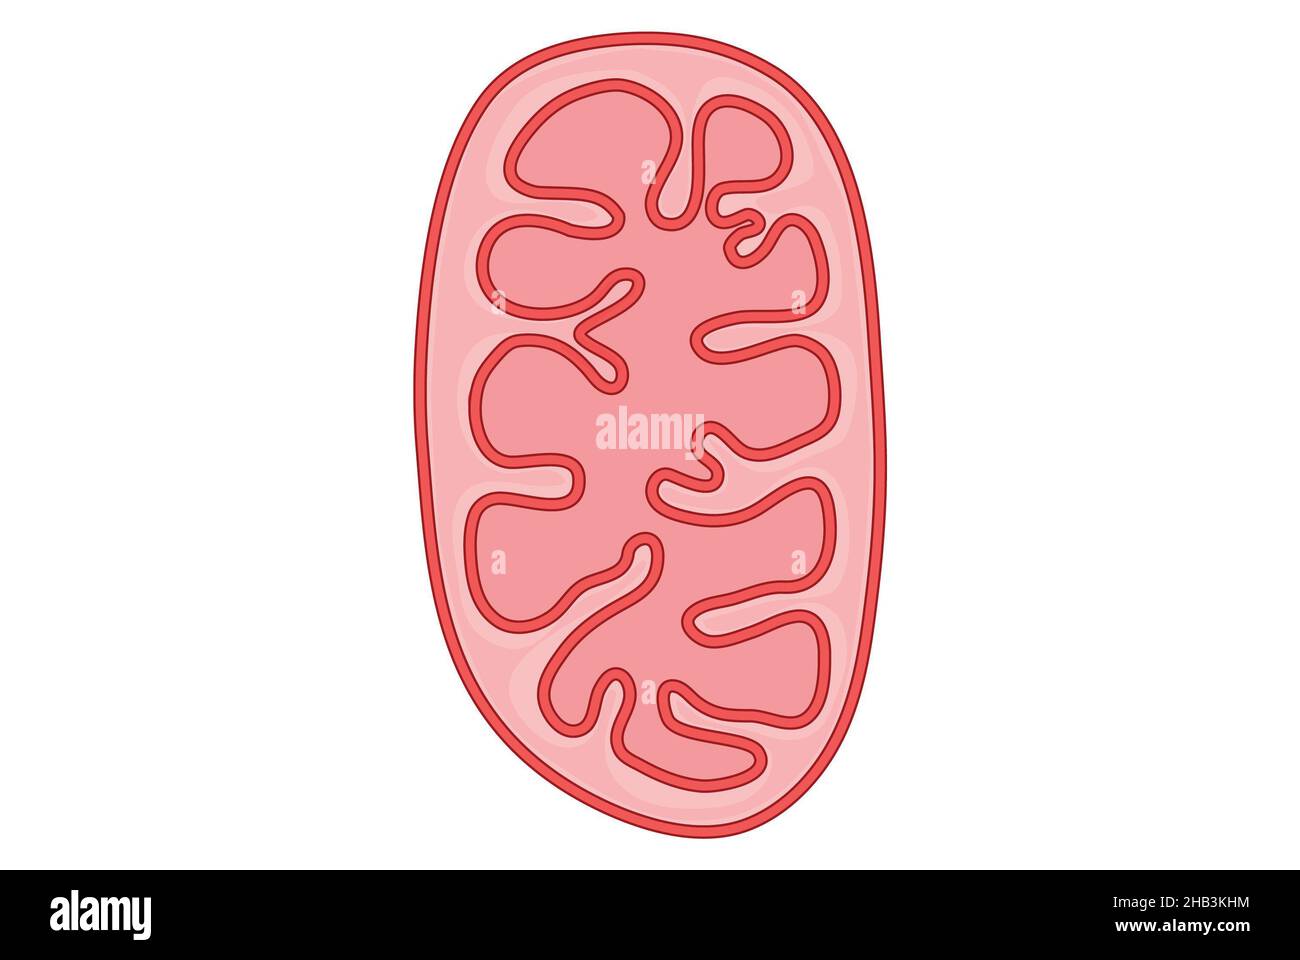 Illustration simple d'une mitochondrie dans la cellule Banque D'Images